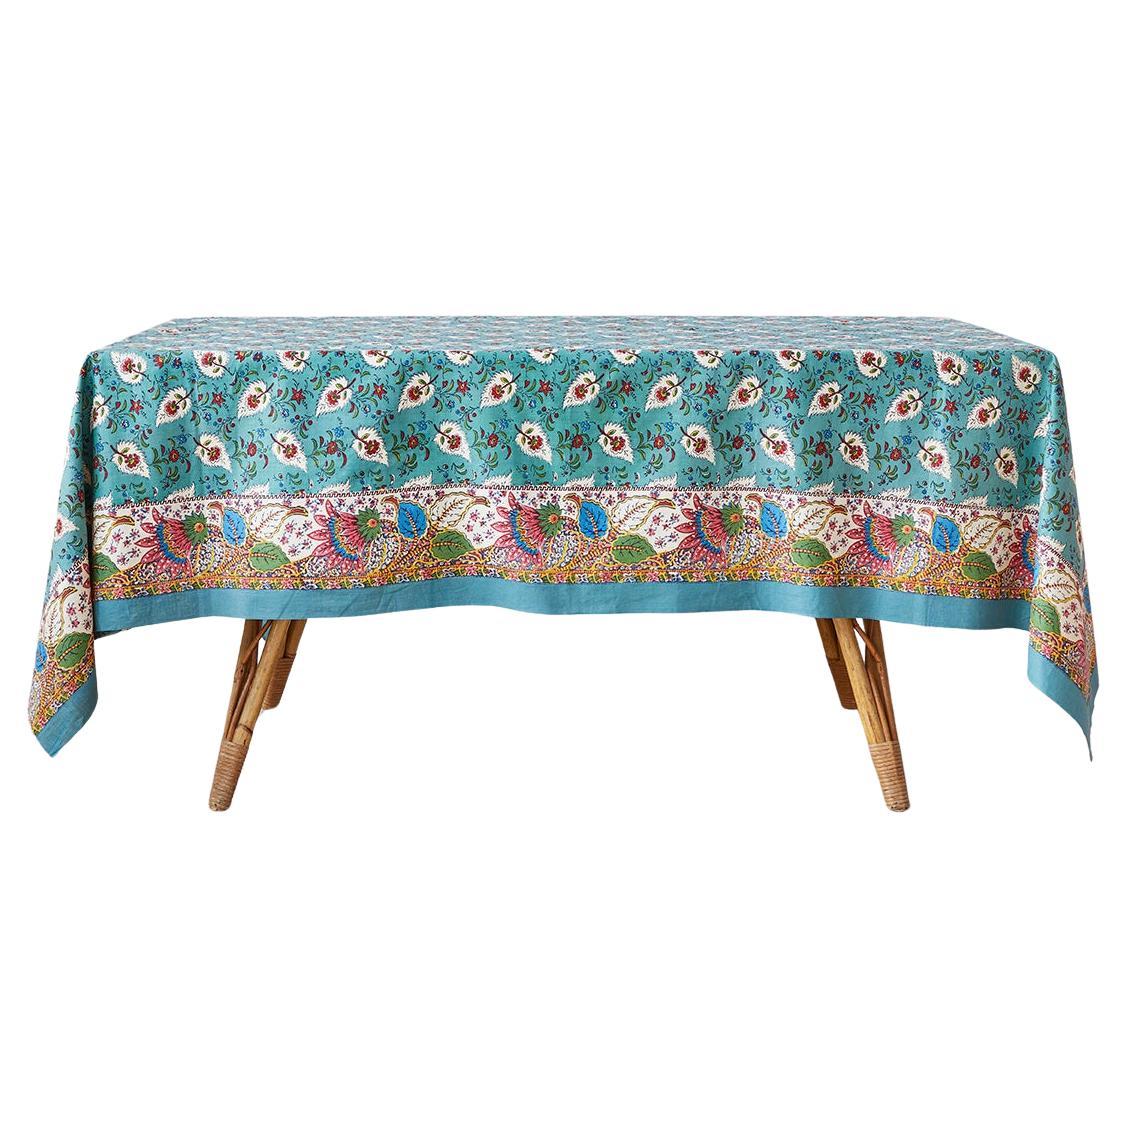 Vintage Blue Floral Patterned Tablecloth in Vintage Textile, France, 1960s For Sale